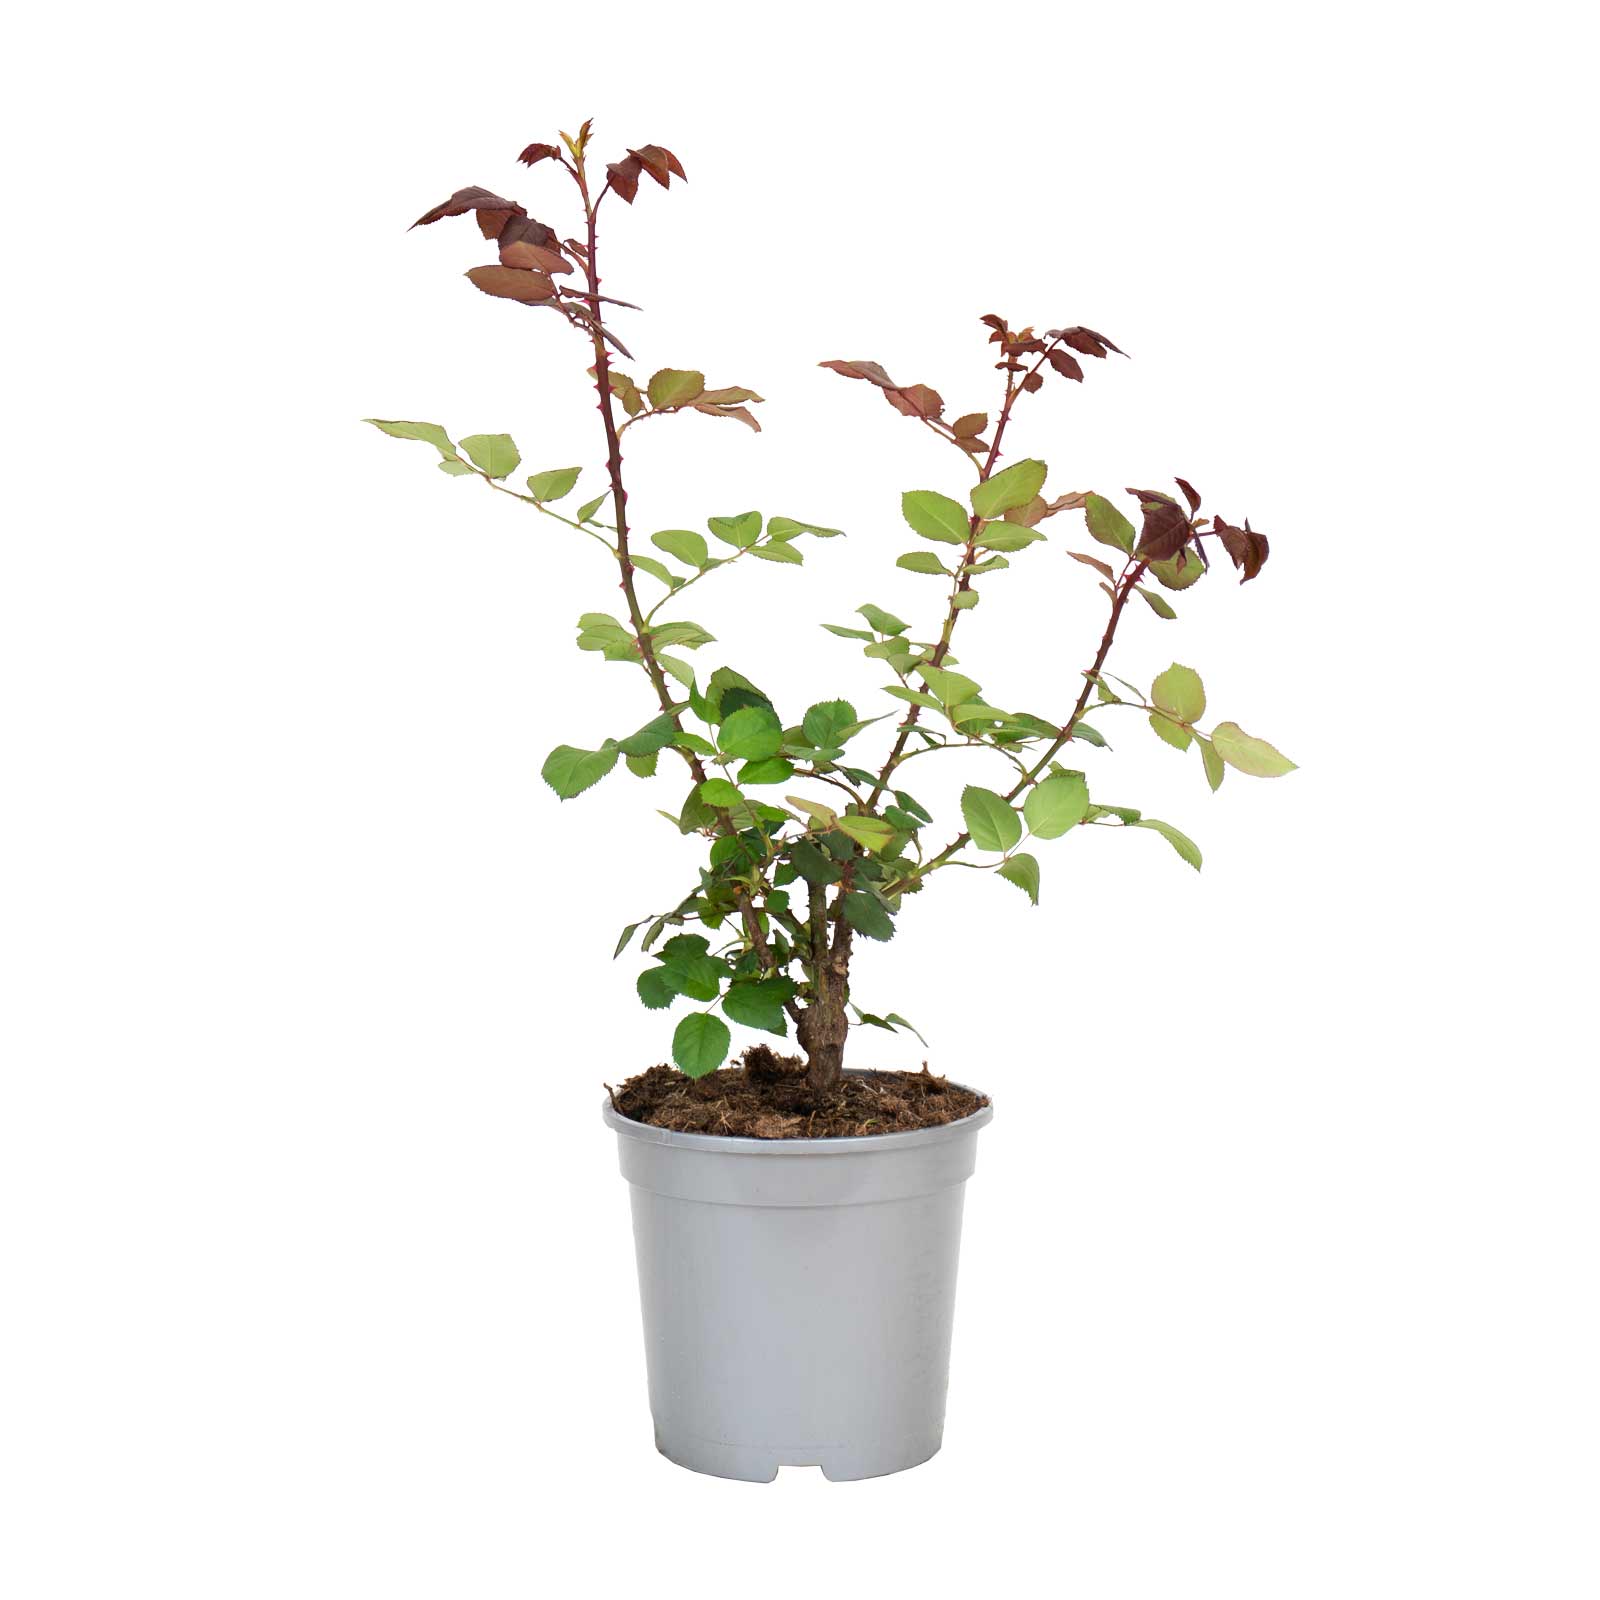 roseira velvet fragrance bioma plants